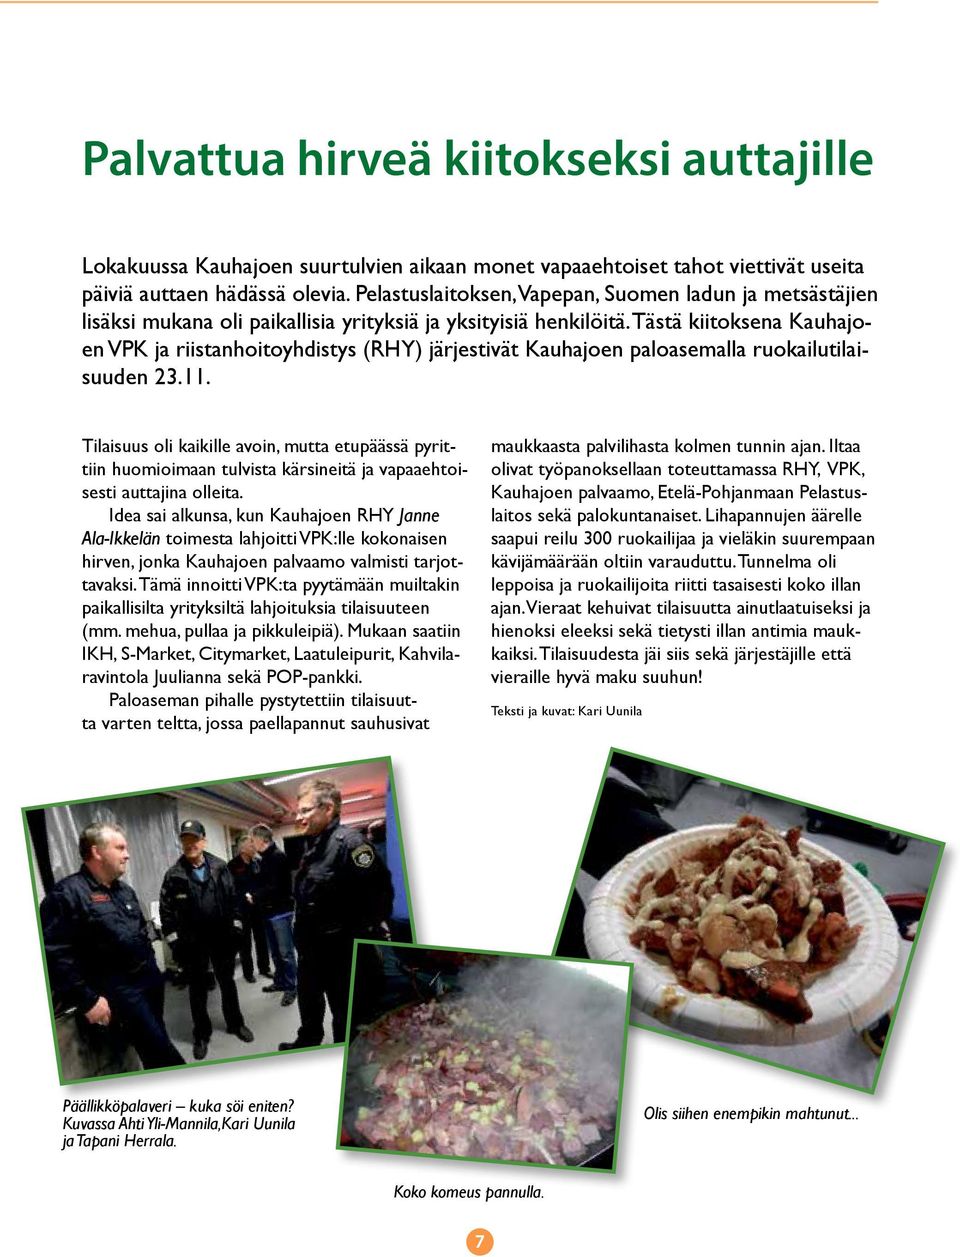 Tästä kiitoksena Kauhajoen VPK ja riistanhoitoyhdistys (RHY) järjestivät Kauhajoen paloasemalla ruokailutilaisuuden 23.11.